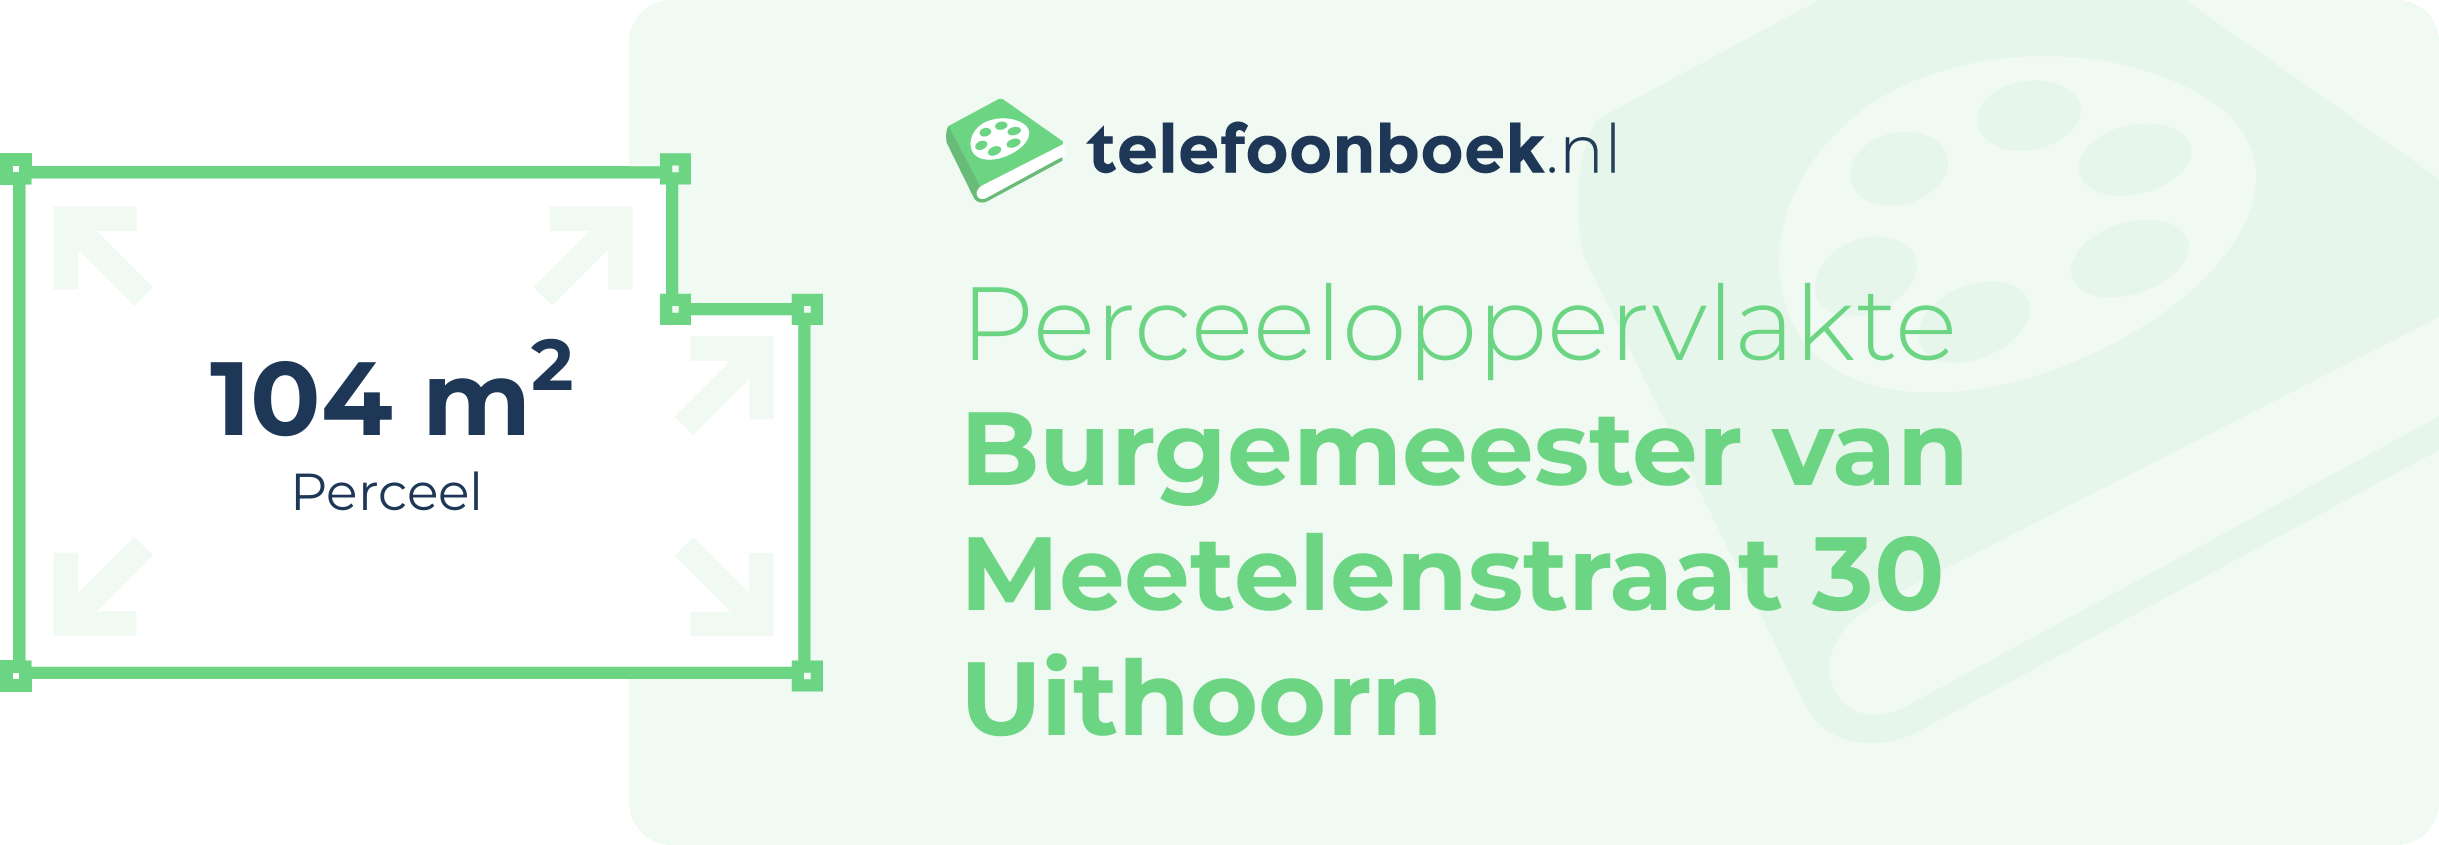 Perceeloppervlakte Burgemeester Van Meetelenstraat 30 Uithoorn